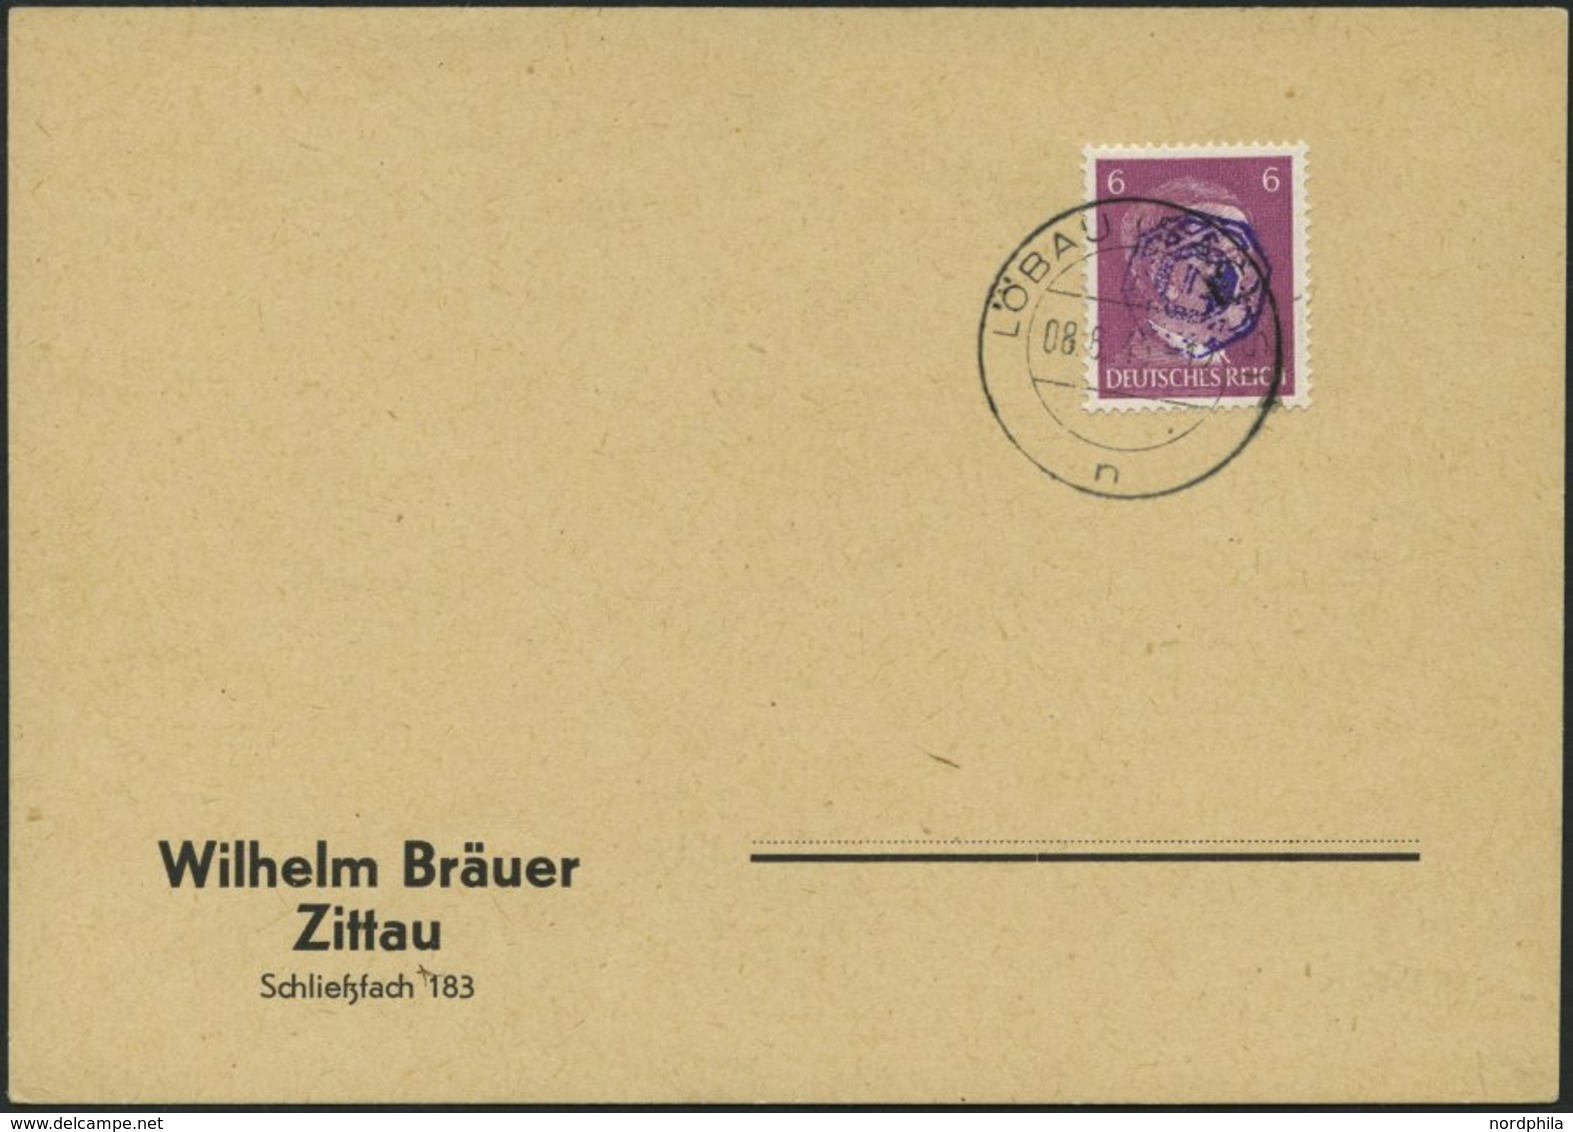 LÖBAU 1 BRIEF, 1945, 6 Pf. Hitler Mit Blauviolettem Echten Aufdruck Auf Bräuer-Blancokarte, Stempel LÖBAU N (derzeit Nic - Privatpost